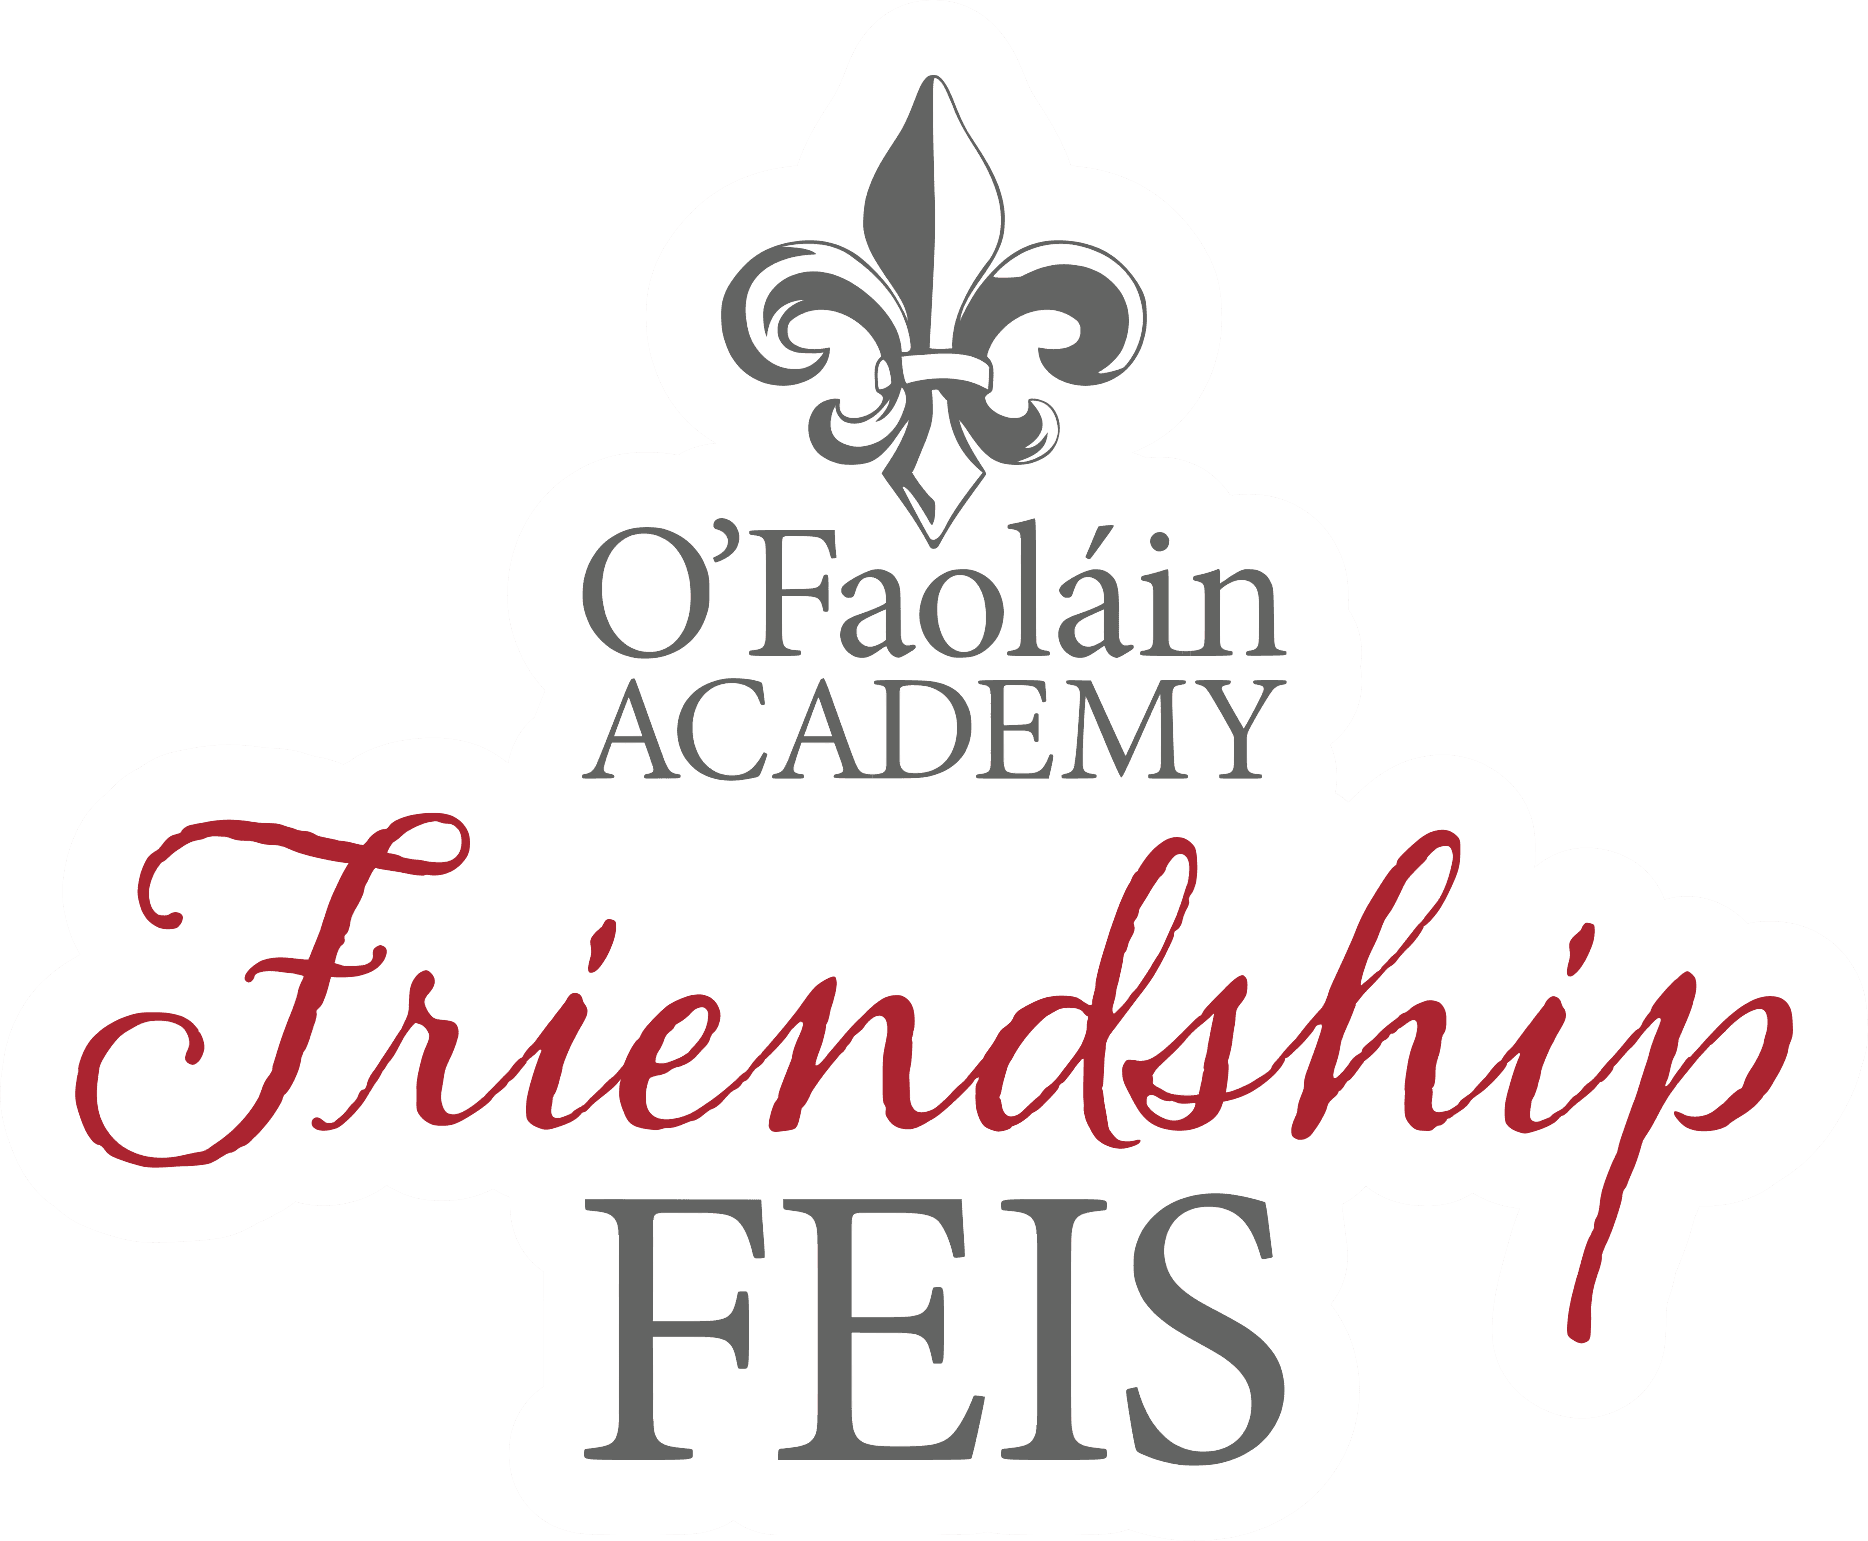 logo for Friendship Feis